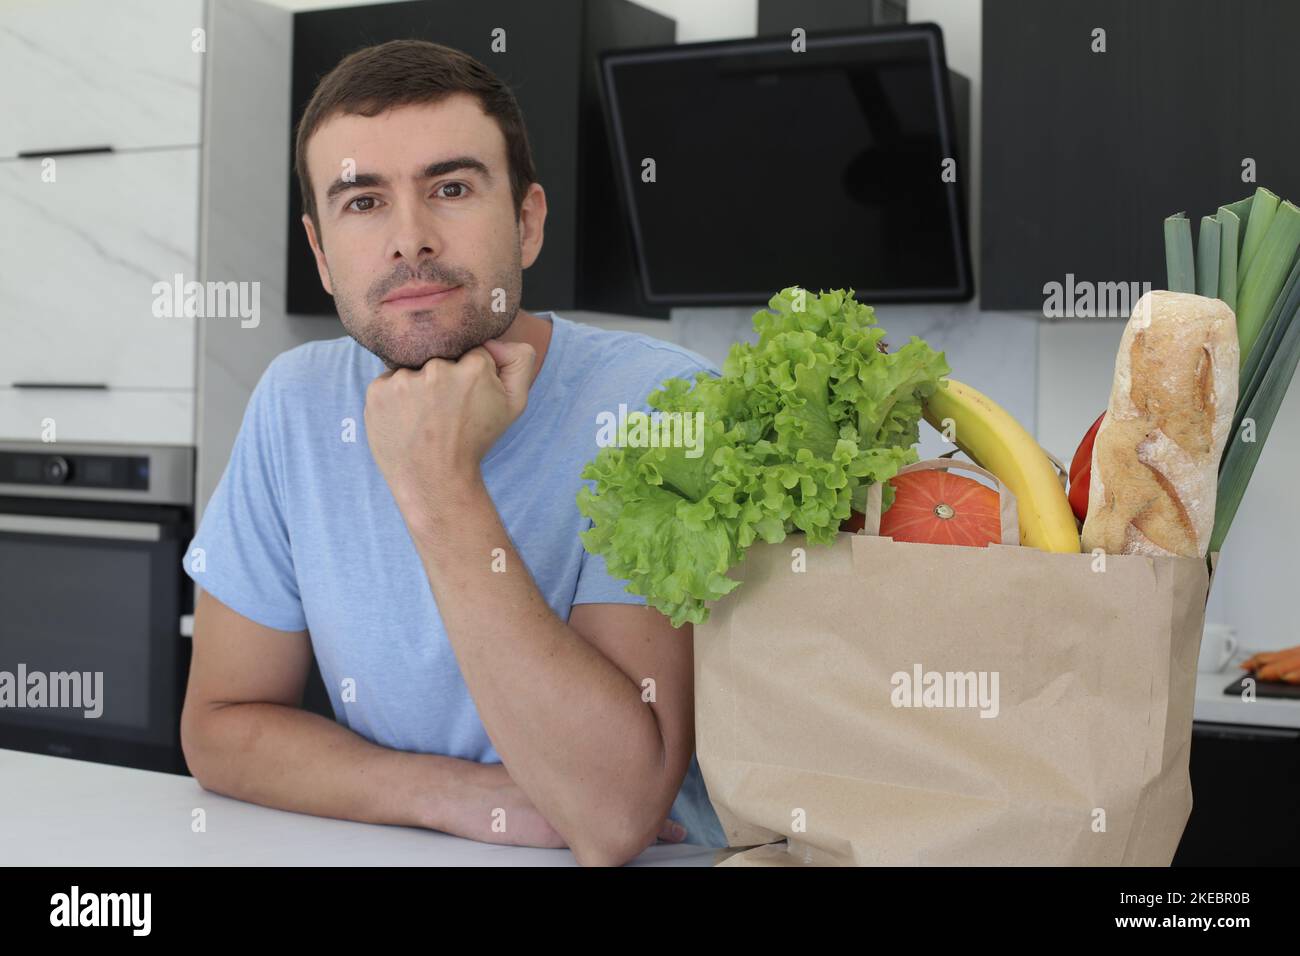 Uomo osservante soddisfatto con i generi alimentari sopra il bancone della cucina Foto Stock